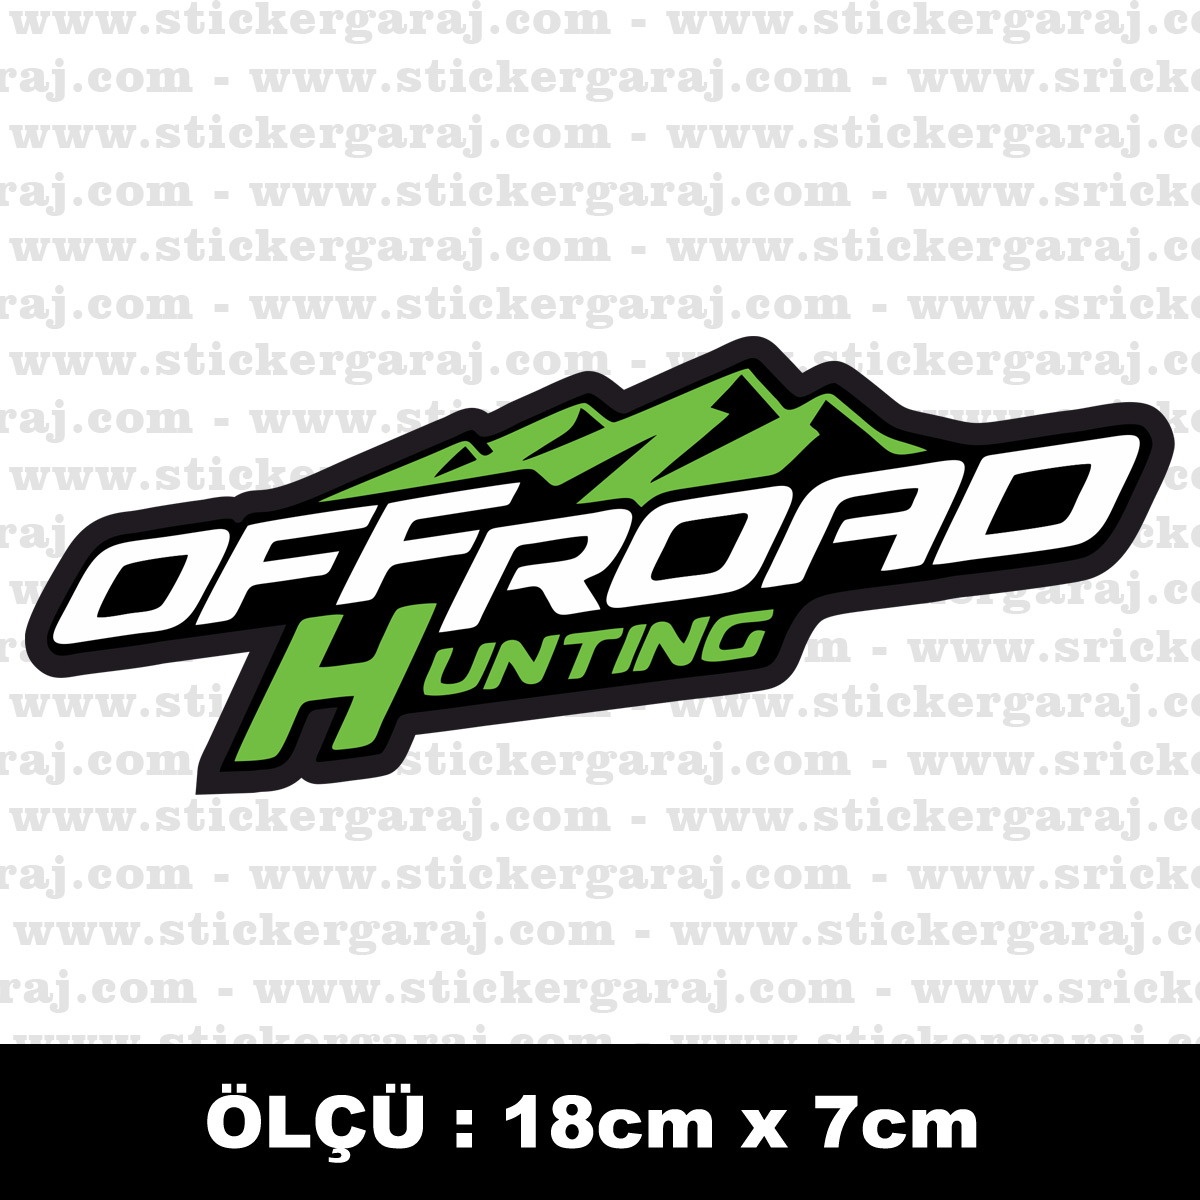 Offroad sticker - Offroad sticker